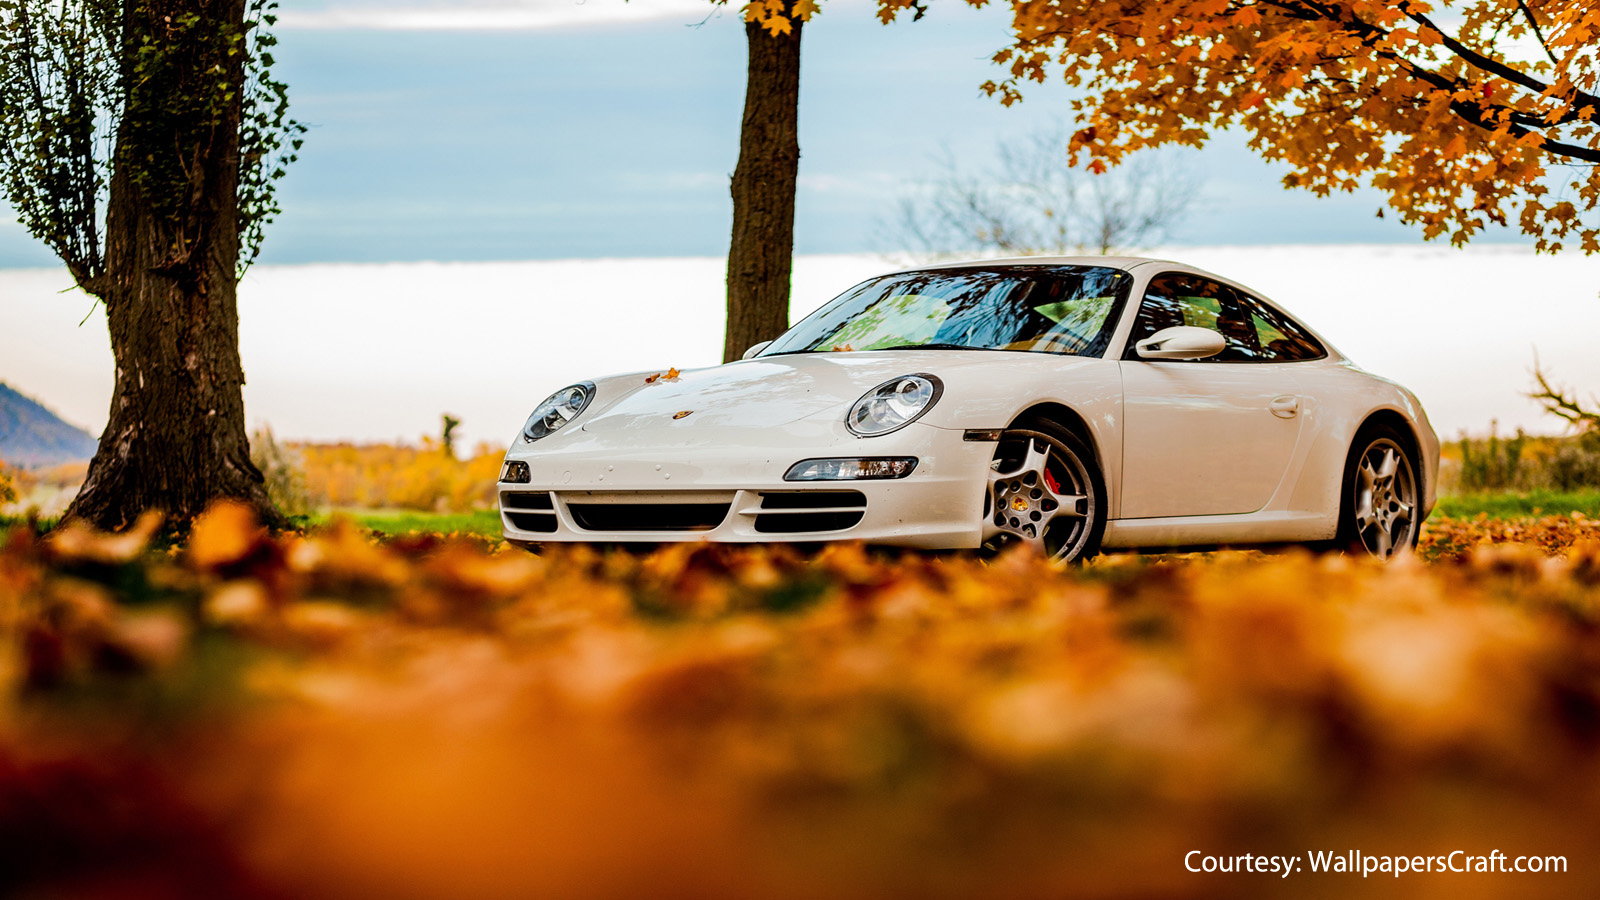 Perfect Porsche Wallpaper for Autumn